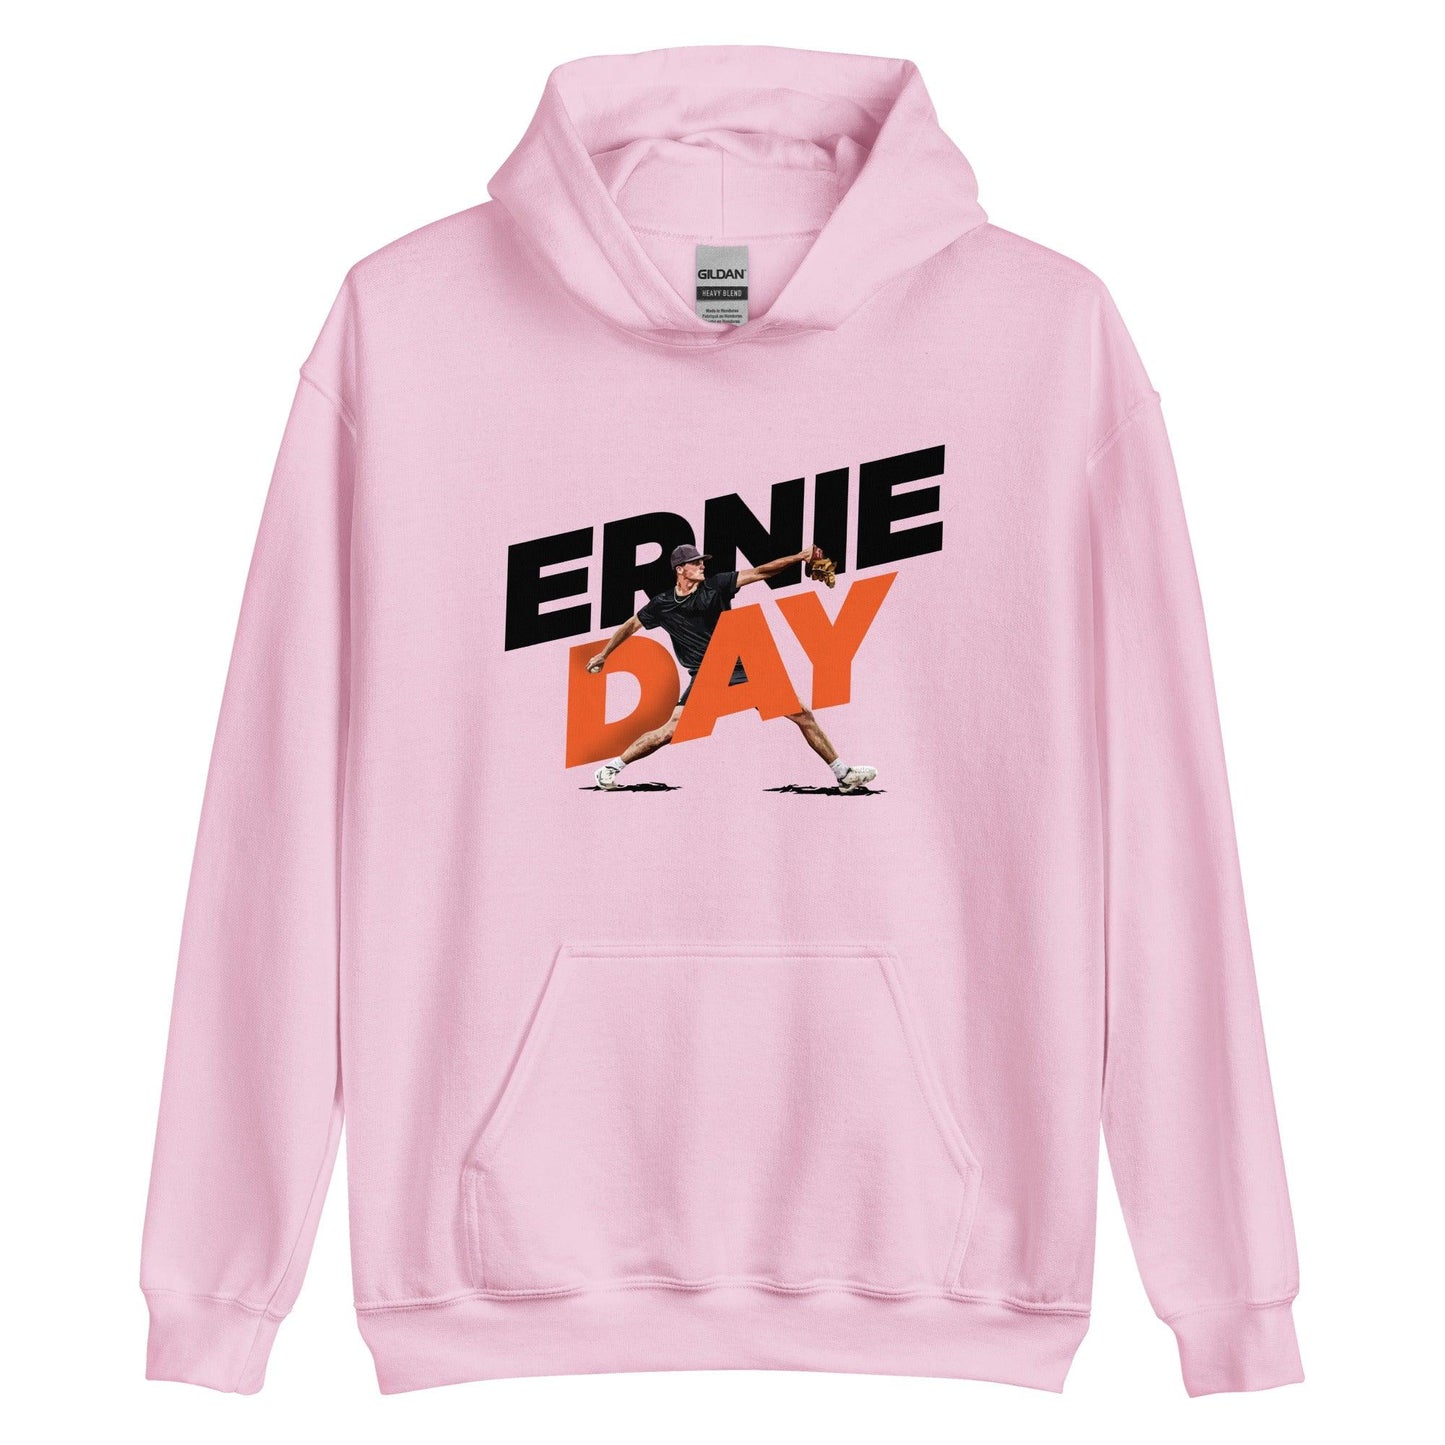 Ernie Day "Gameday" Hoodie - Fan Arch